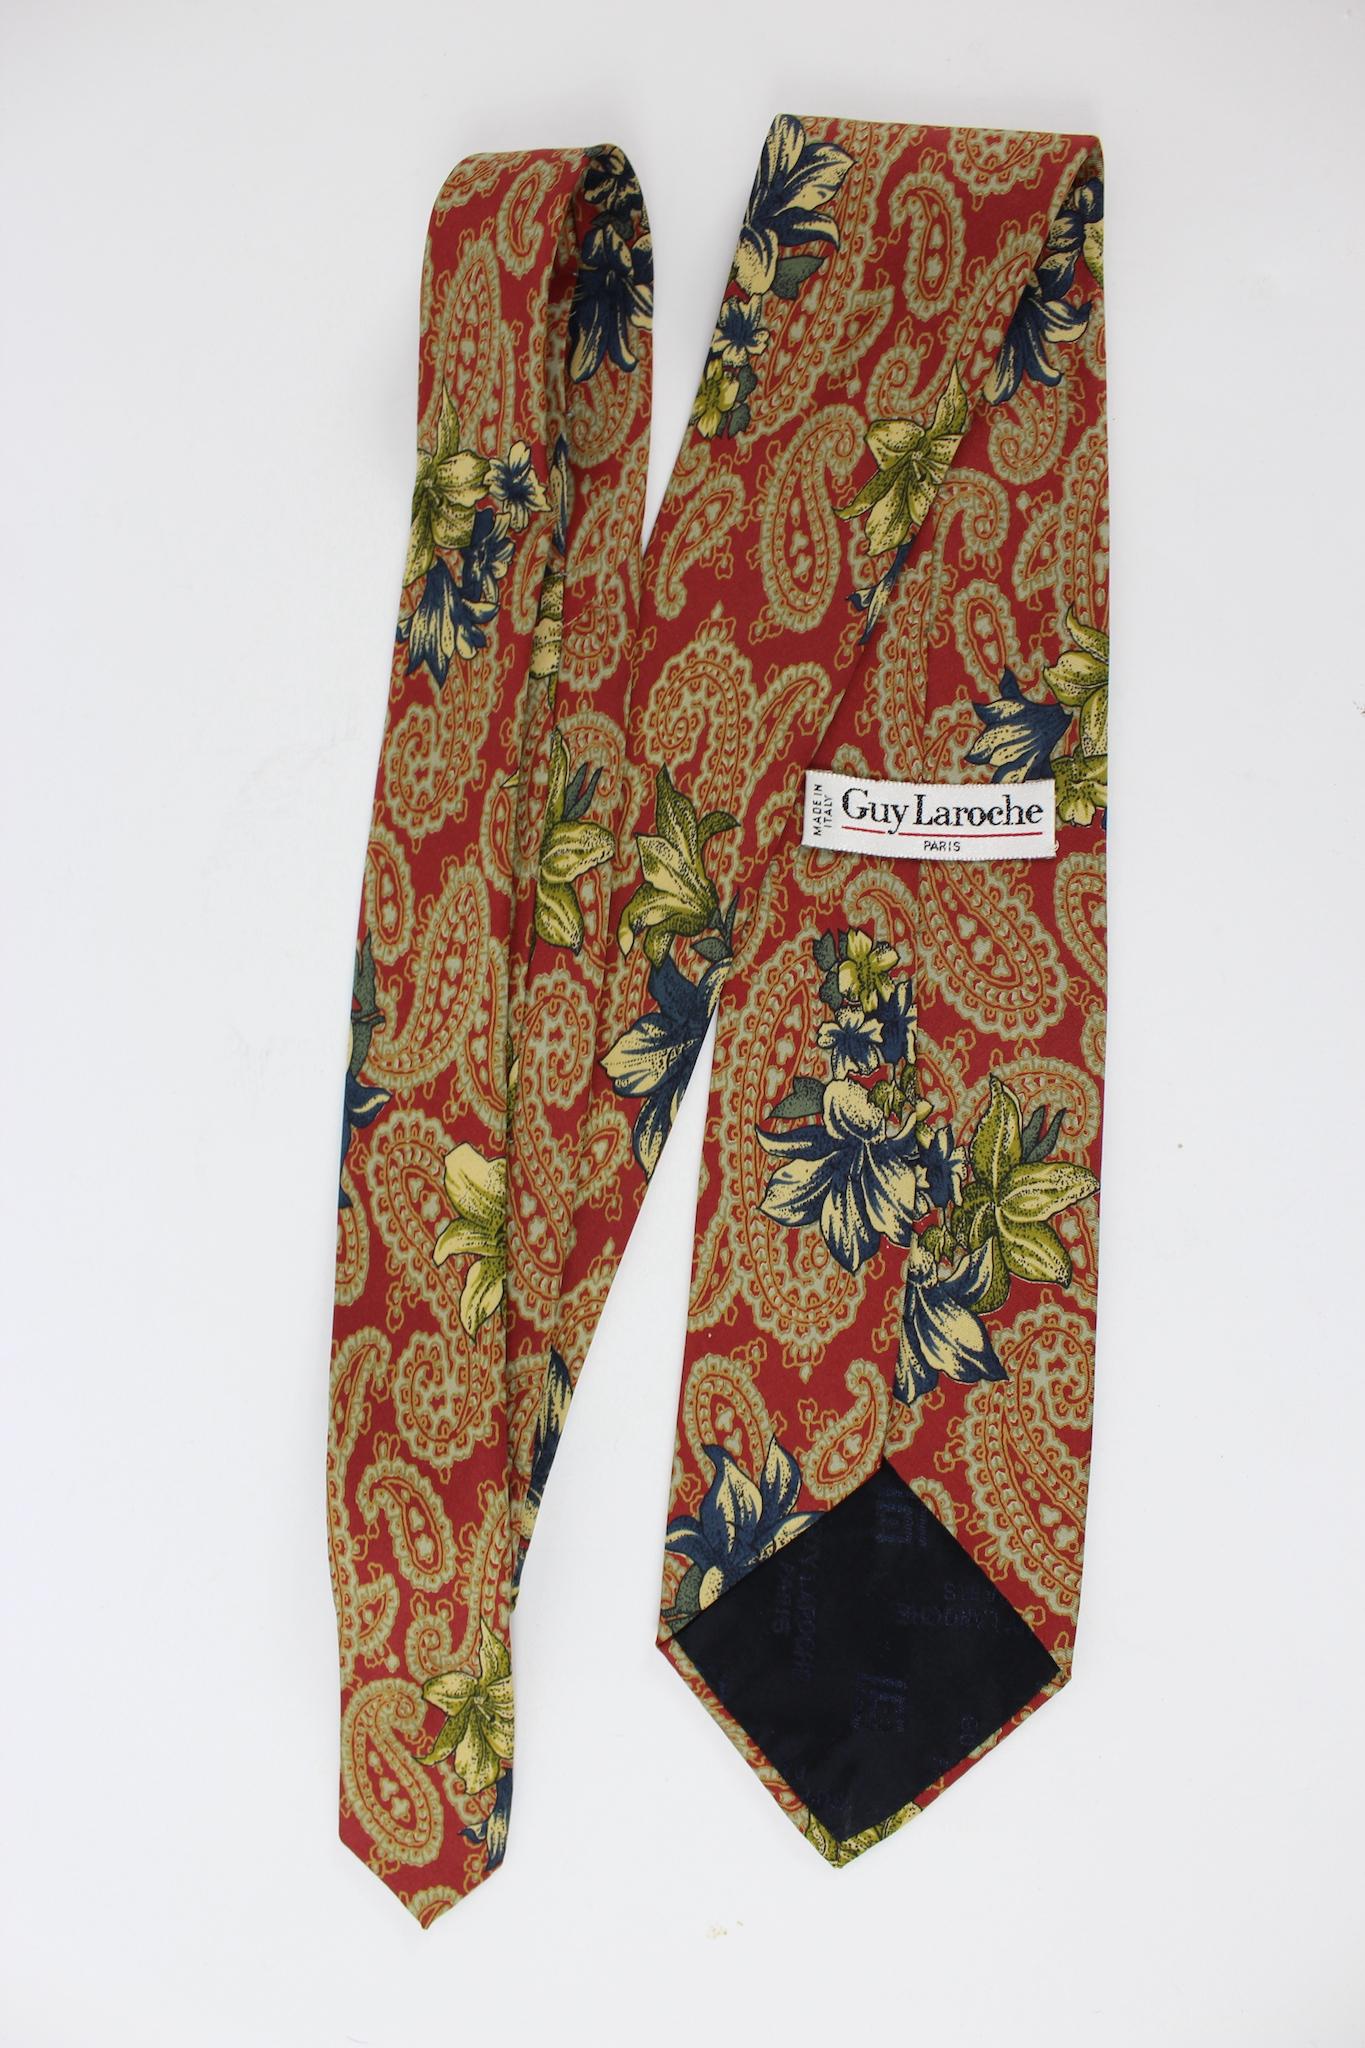 Cravate florale vintage des années 80 Guy Laroche. Couleur rouge, beige et bleu avec des motifs paisley et floraux. 100% soie. Fabriquées en Italie.

Longueur : 150 cm
Longueur : 9 cm